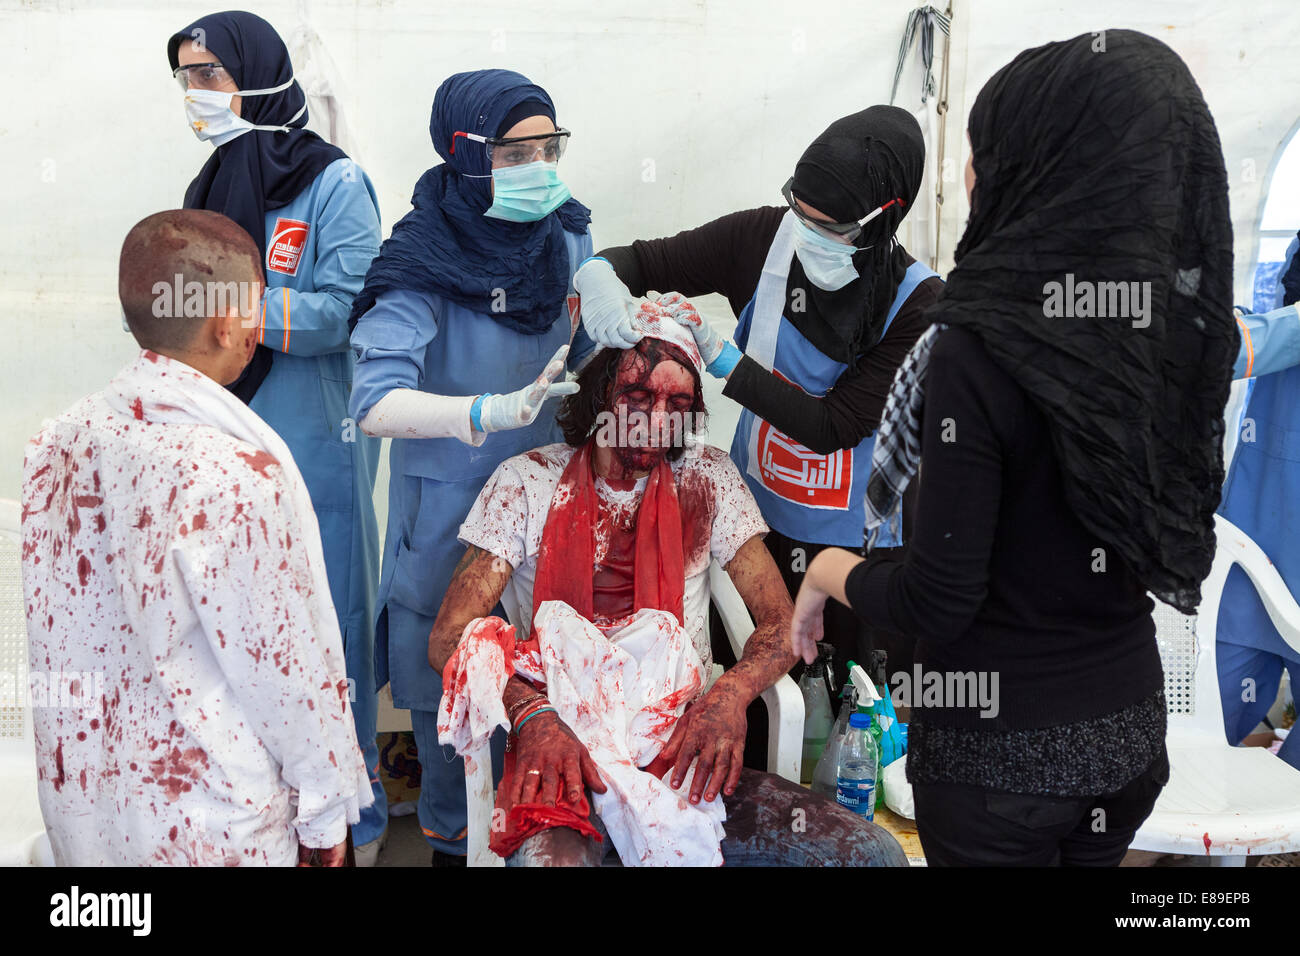 L'homme musulman chiite, couvert de son propre sang, de recevoir des soins médicaux, sur Achoura Journée à Nabatieh, Liban. Banque D'Images